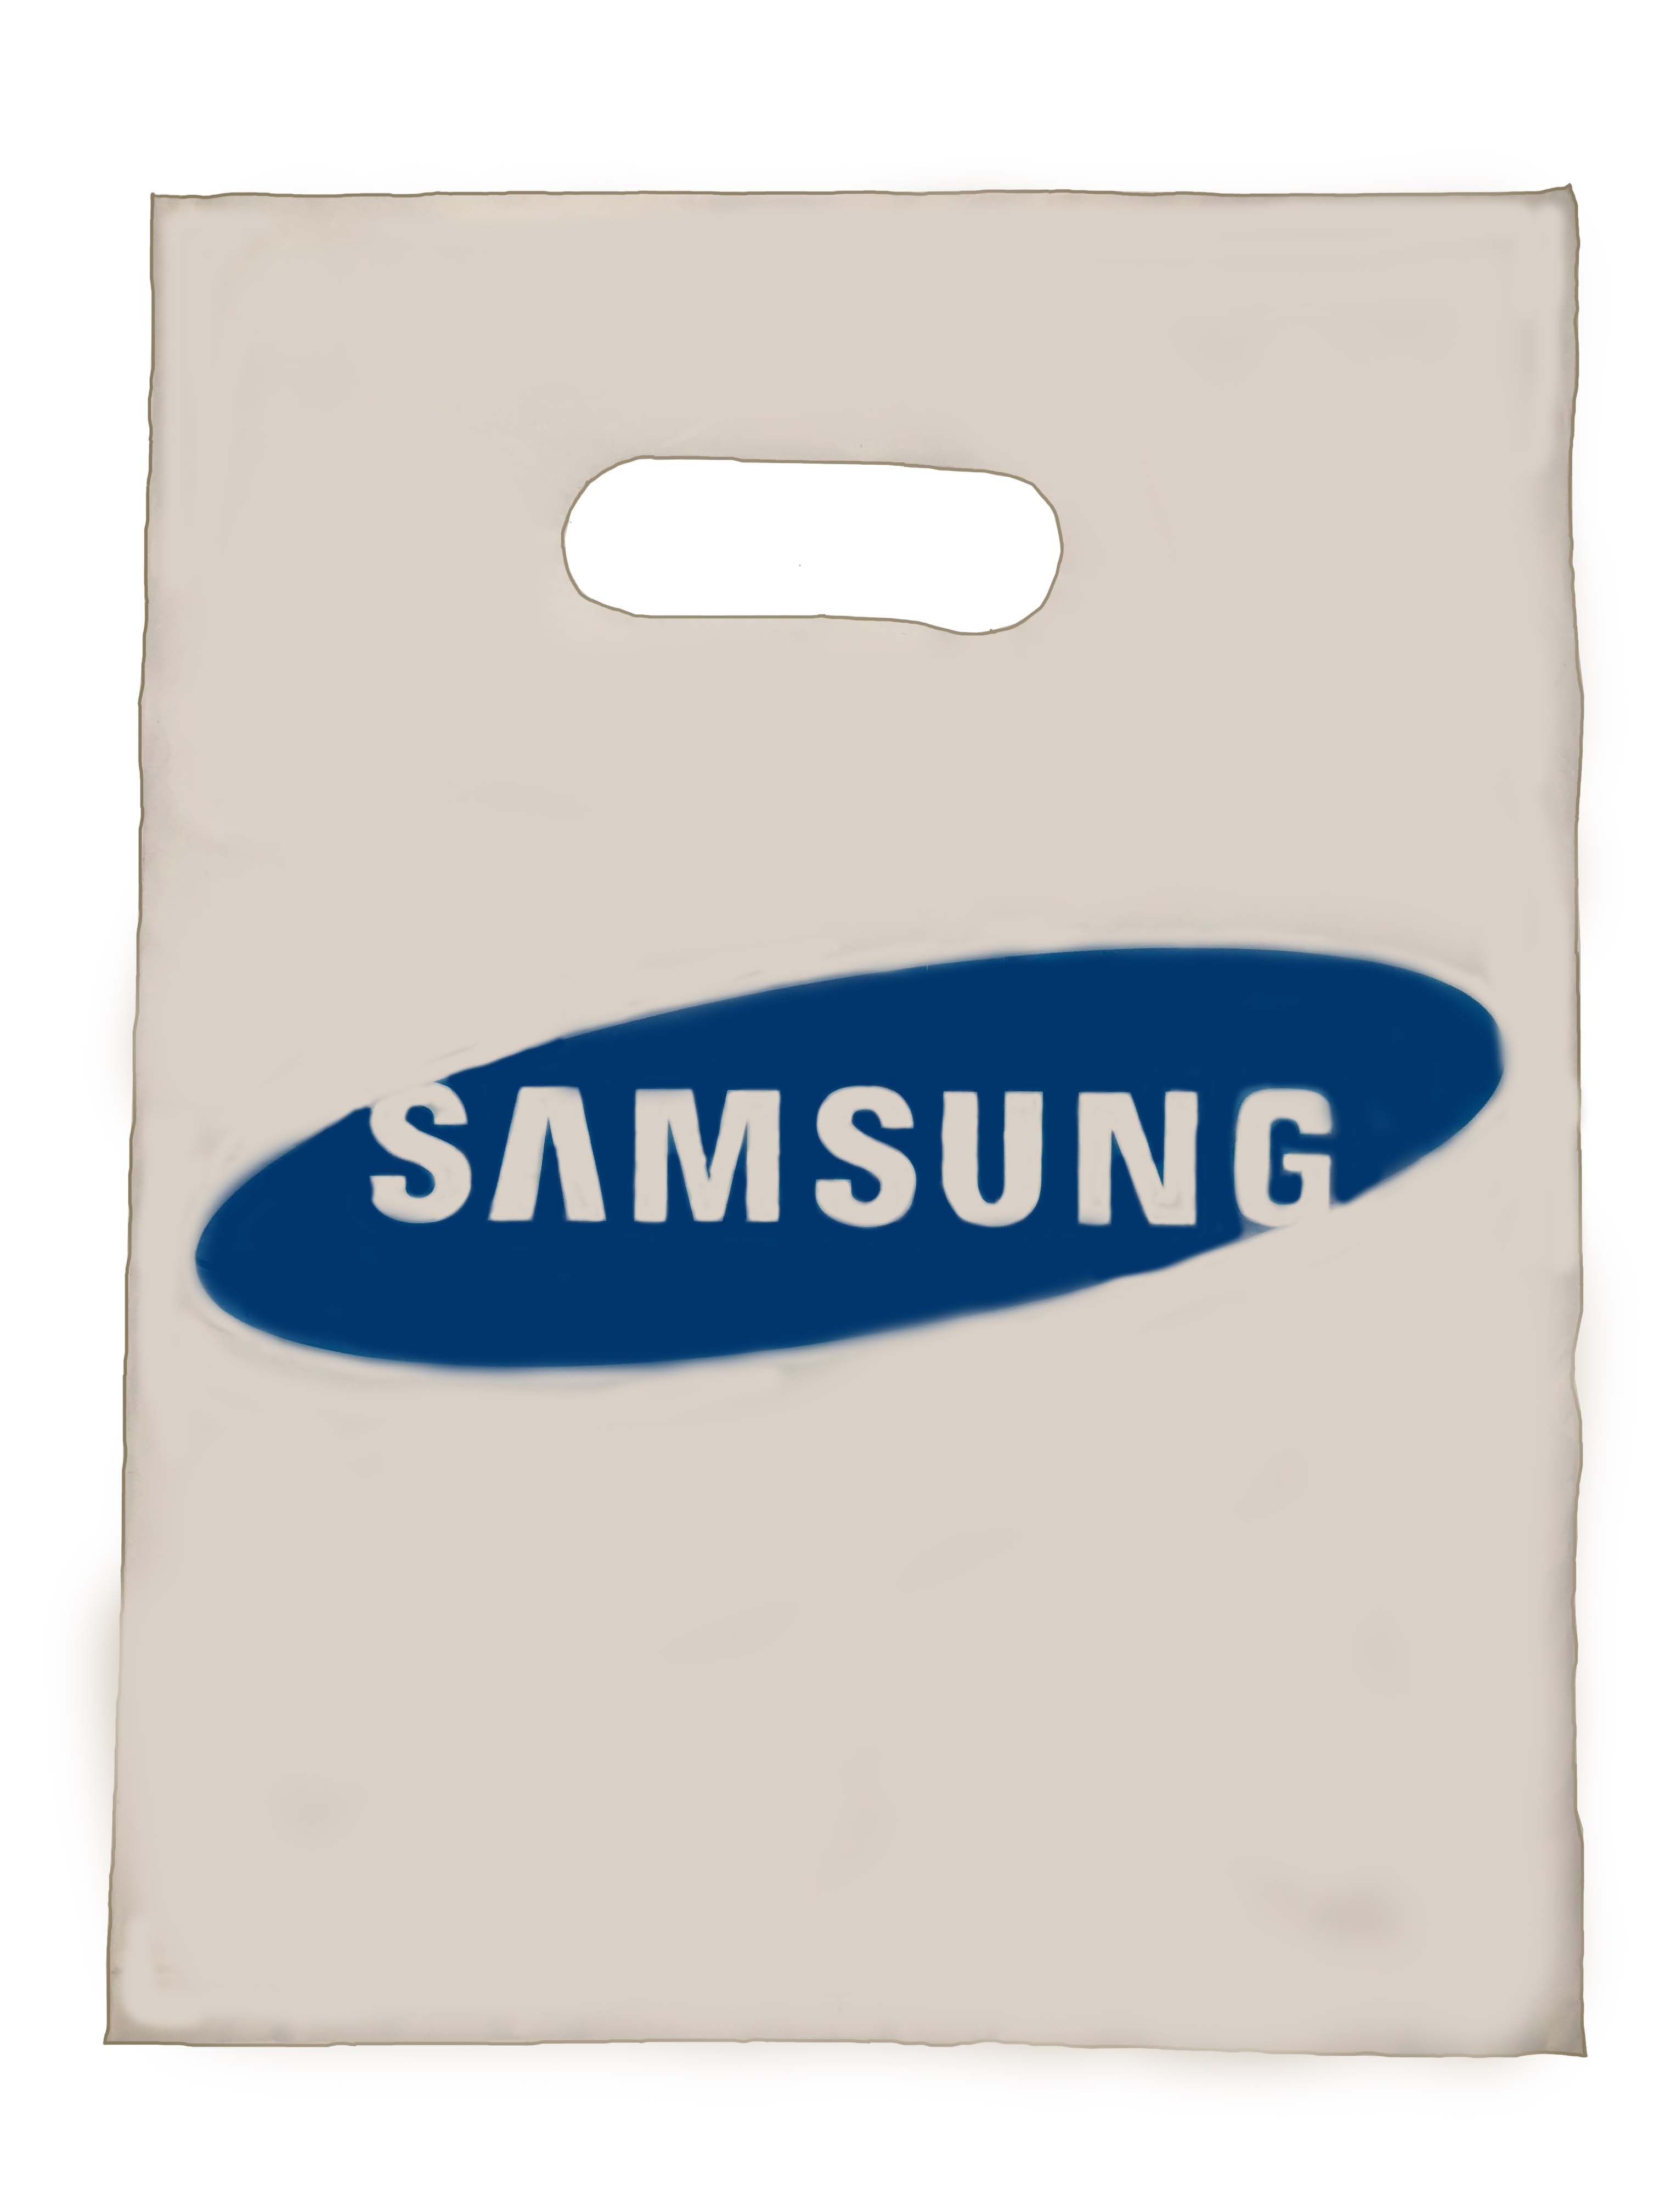 Пакет Samsung маленький (27*21 см) 50 штук в упаковке